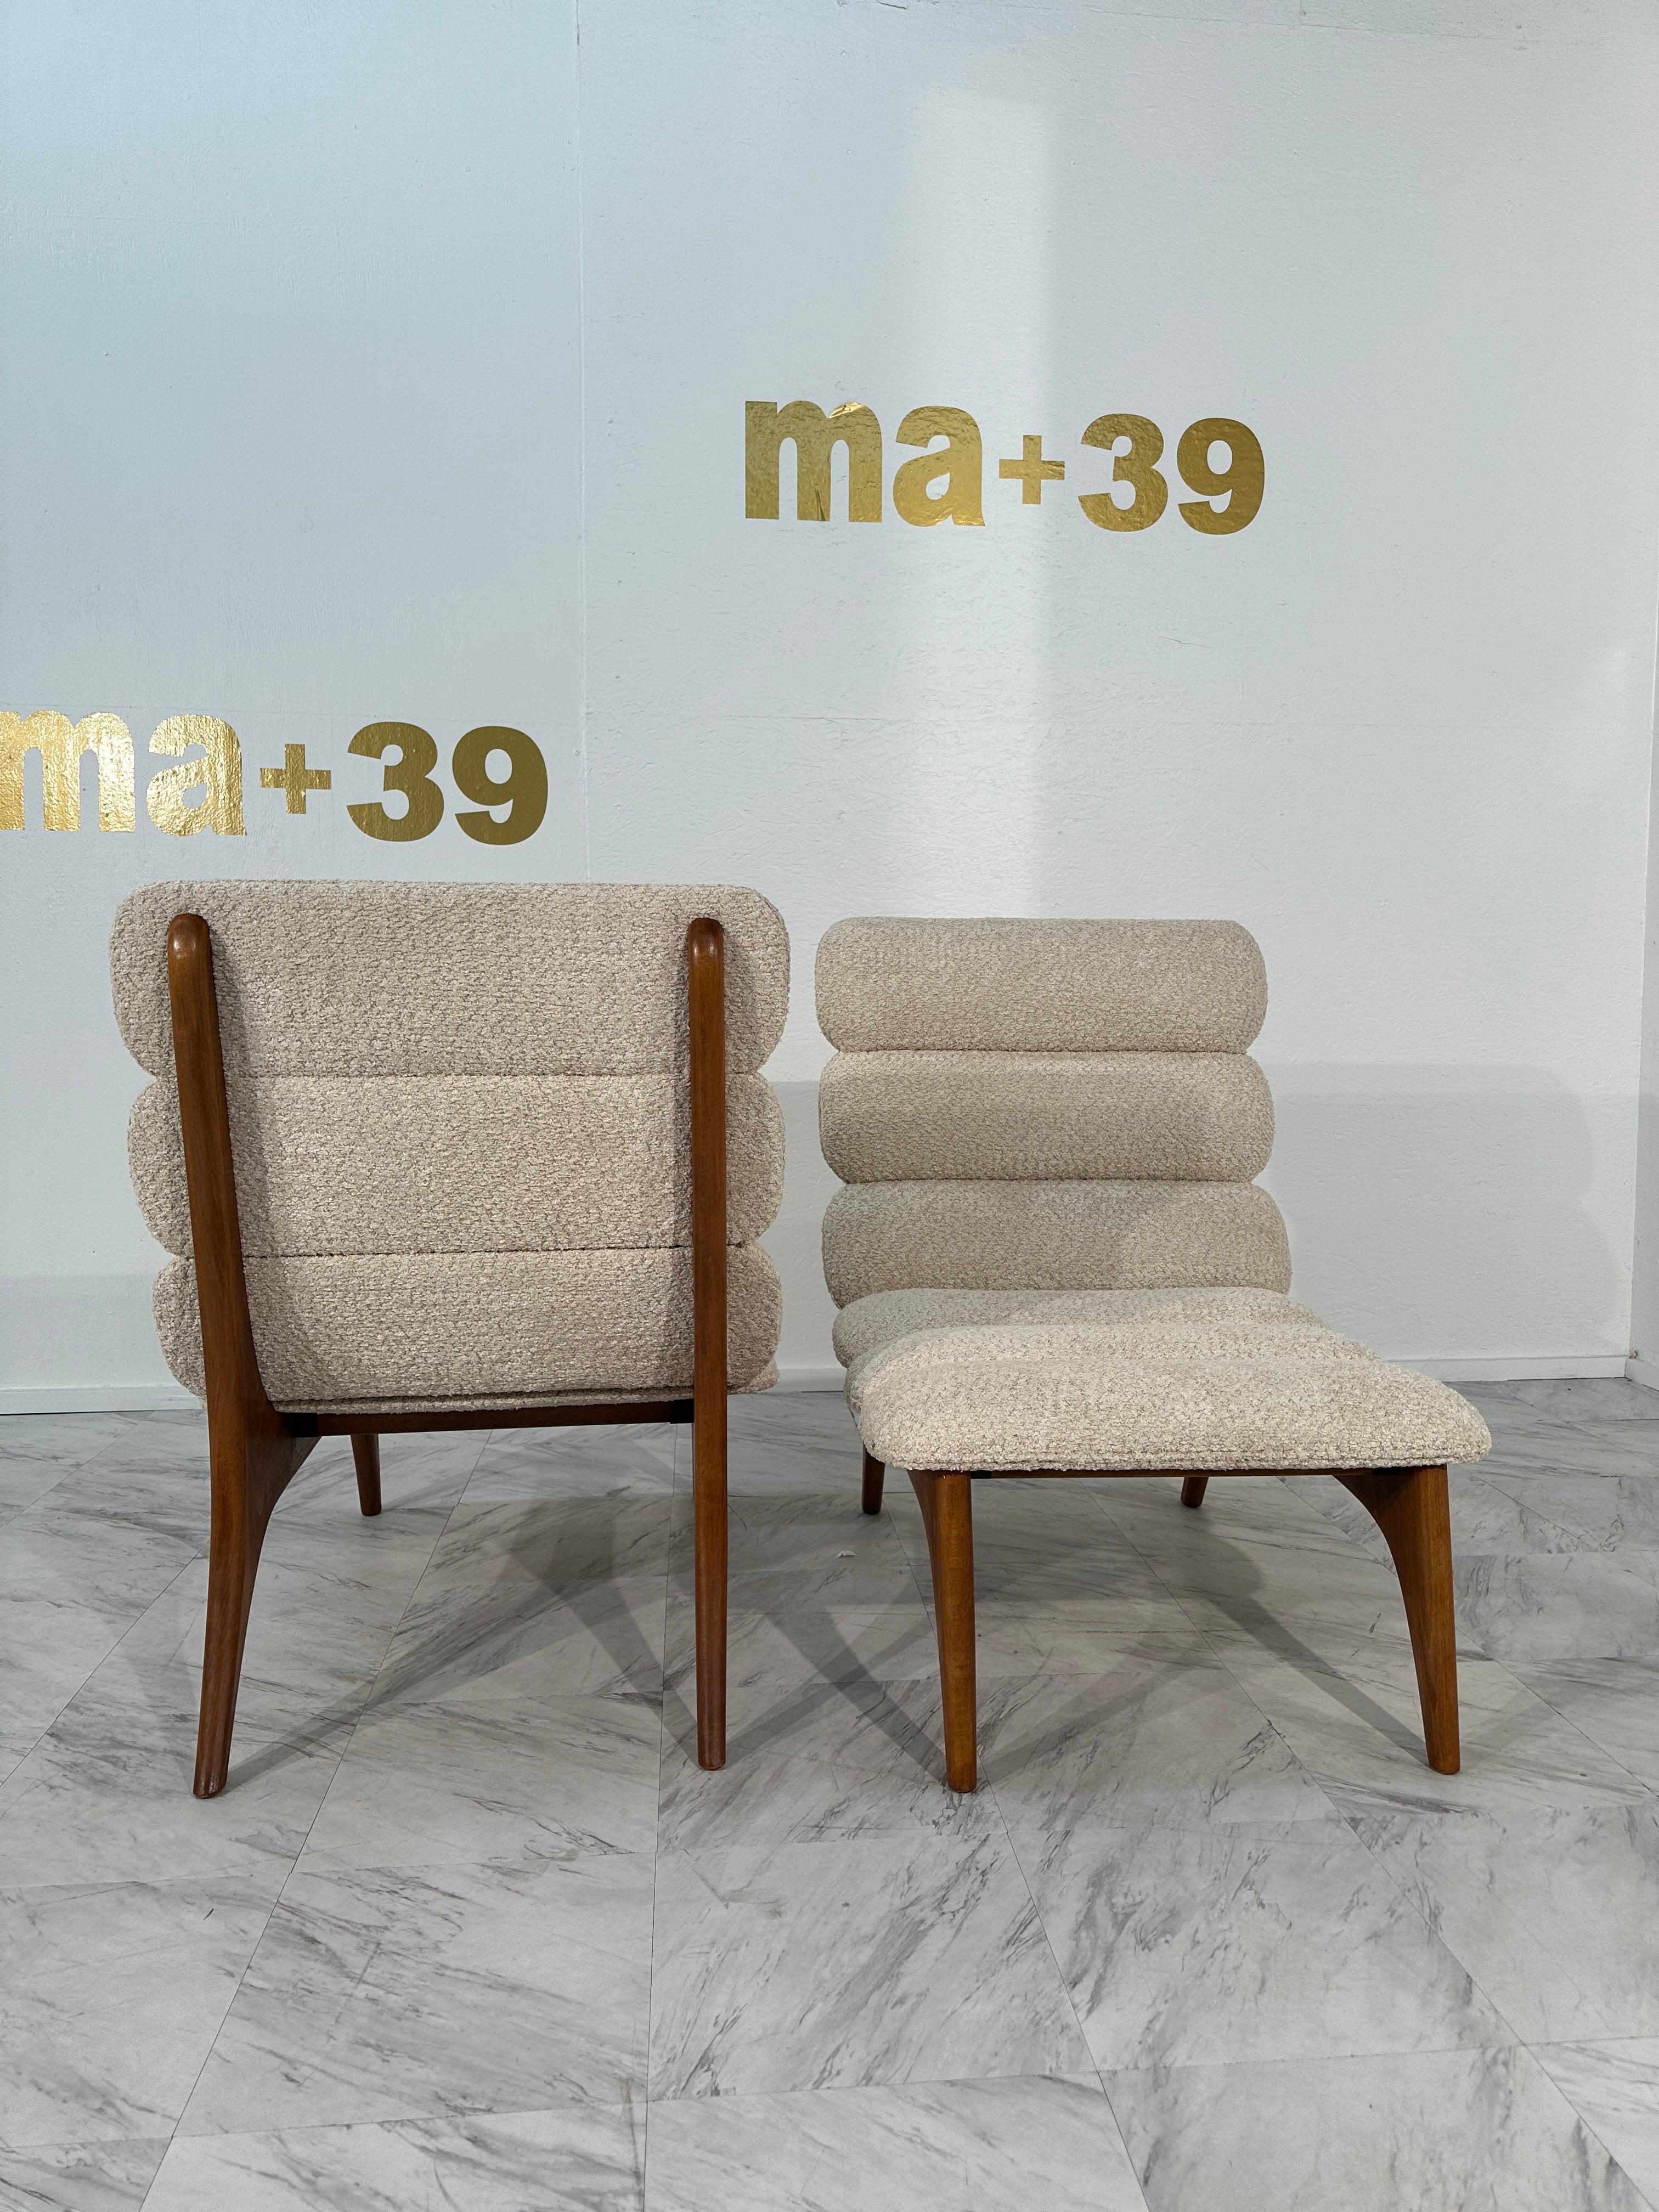 Das Paar dänischer Loungesessel mit Boucle-Stoff aus den 1980er Jahren verkörpert das ikonische skandinavische Designethos von Einfachheit, Funktionalität und Komfort. Die mit Präzision und Liebe zum Detail gefertigten Stühle zeichnen sich durch